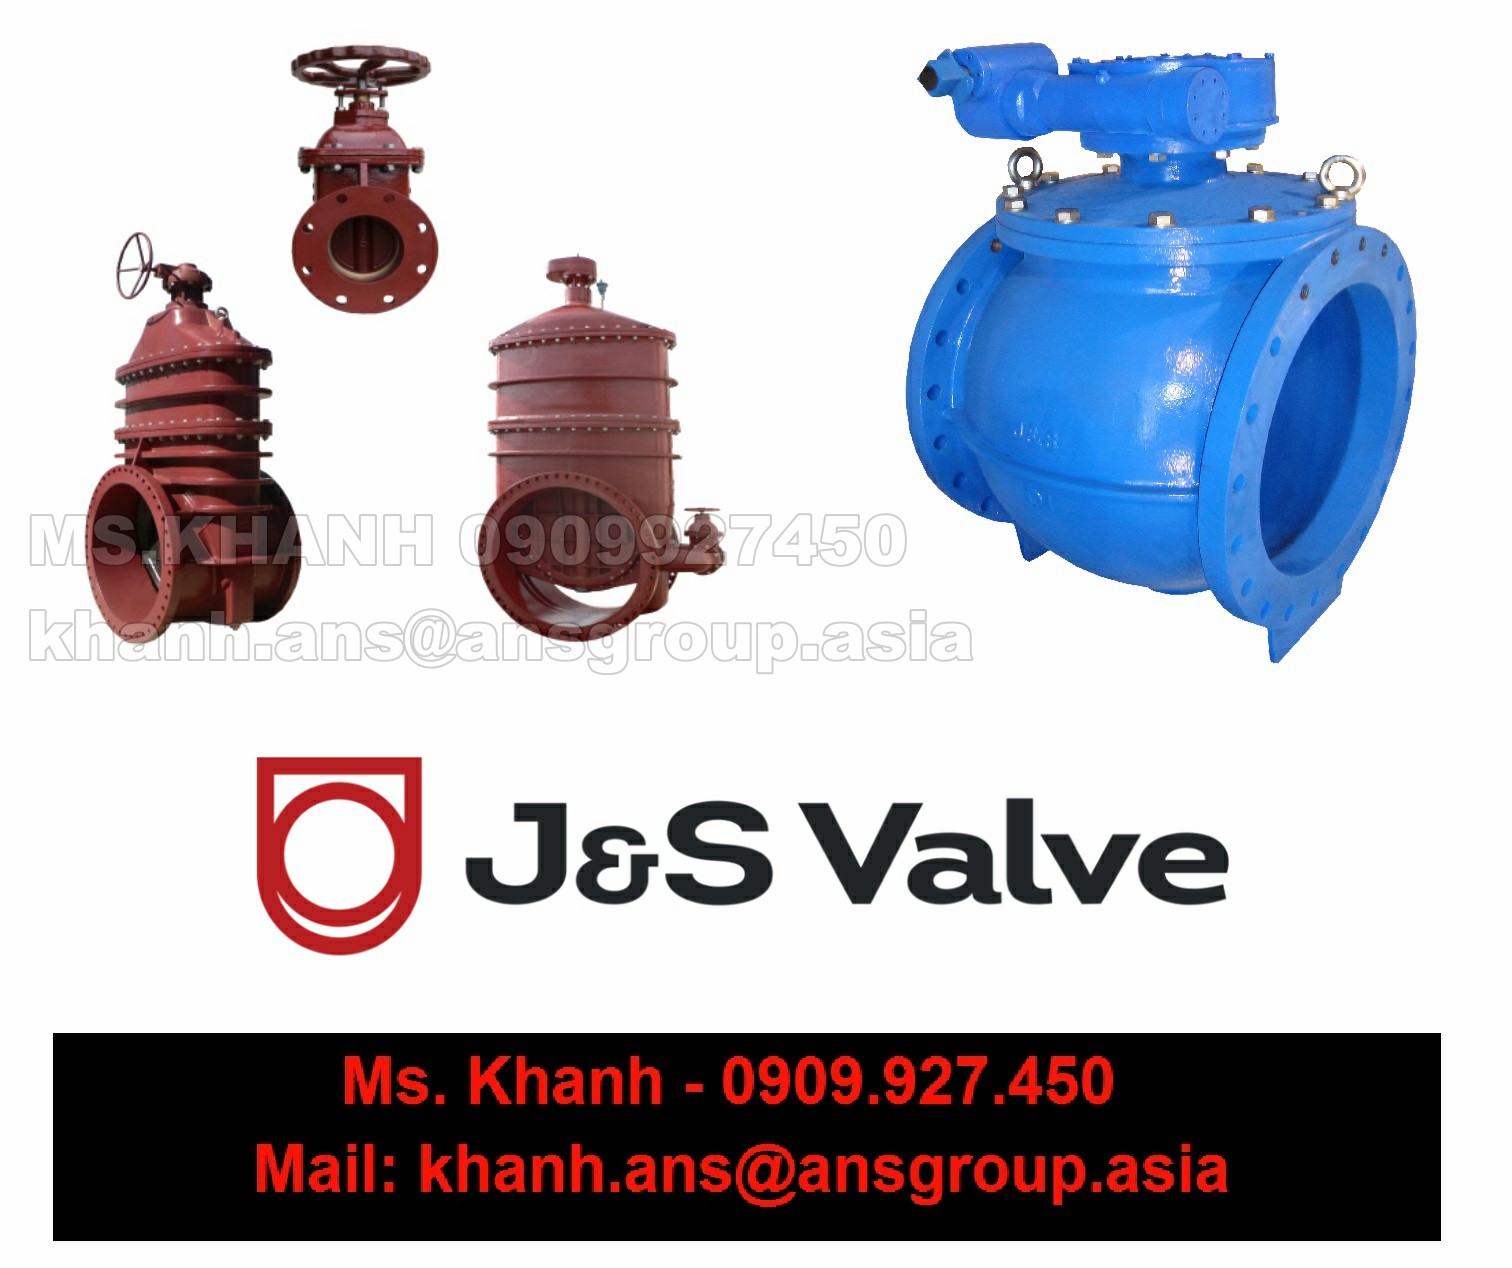 van-h44t-10-dn40-js-valve-vietnam-1.png